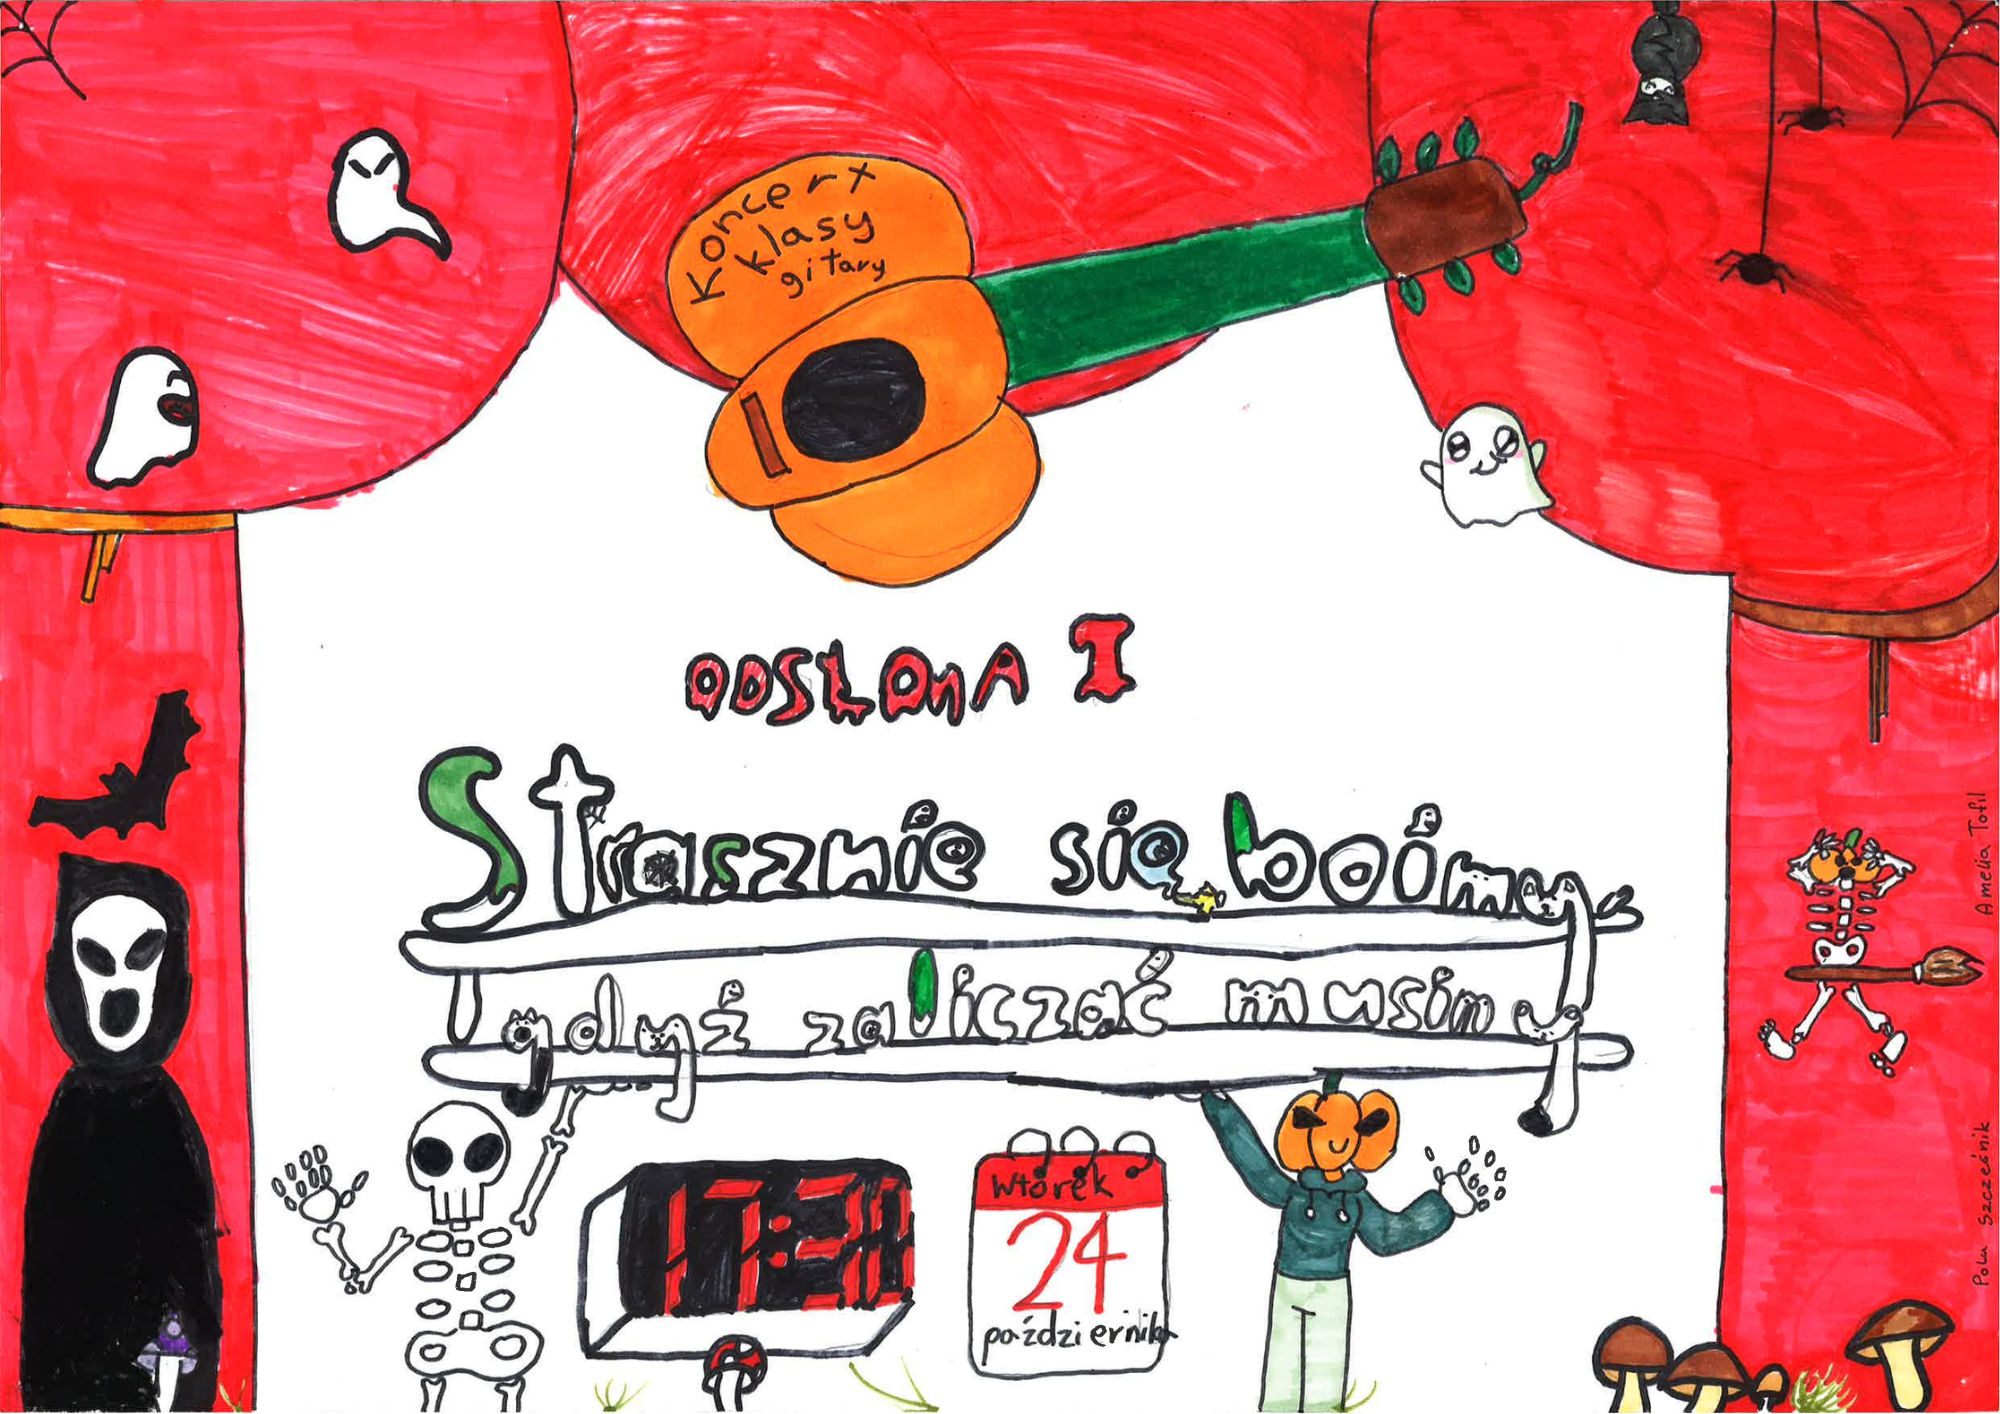 Plakat koncertu stworzyły odręcznie technikami analogowymi dwie uczennice klasy gitary prowadzonej przez Dariusza Wróbla: Amelia Tofil i Pola Szcześnik. W centralnej części widocznego na stronie internetowej szkoły plakatu przetworzonego elektronicznie jest skan plakatu wykonanego odręcznie przez uczennice flamastrami oraz kredkami. Kolory użyte to przeważnie czerwień, czerń, pomarańcz jak również w mniejszej ilości zieleń, niebieski oraz brąz. Grafiki zostały zaczerpnięte z wyobraźni uczennic i nie są ogólnie dostępne w zasobach internetowych. Są to: duszki, kościotrup, śmierć, grzyby leśne, miotła, gitaro-dynia, nietoperze, pająki, pajęczyna. Tekst widoczny centralnie na plakacie odręcznym to: ,,Strasznie się boimy, gdyż zaliczać musimy - odsłona 1". W dolnej części widoczna jest data wraz z godziną koncertu ,,wtorek 24 października, godz. 17.30". tło widoczne z obu stron odręcznego plakatu. Tło złożone jest z grafik dostępnych w programie canva. Grafiki użyte to: duszek, wiedźma na miotle, straszny dom, nietoperze, dynie, czapka czarownicy, pajęczyna, pająk, mumia.